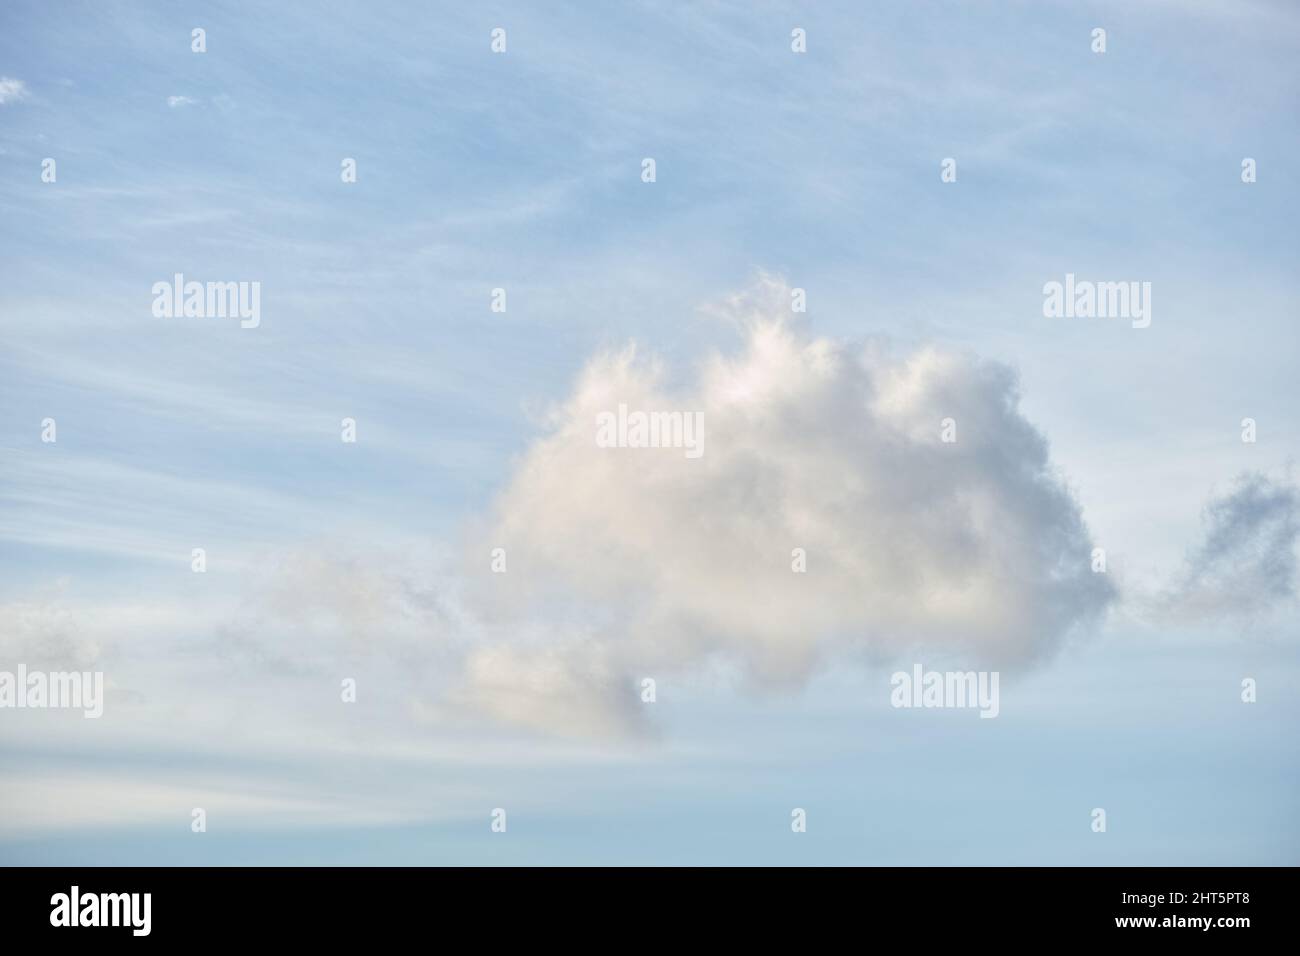 Wispige Wolken am Sommerhimmel. Wispy weiße Wolken gegen einen blauen Himmel. Stockfoto